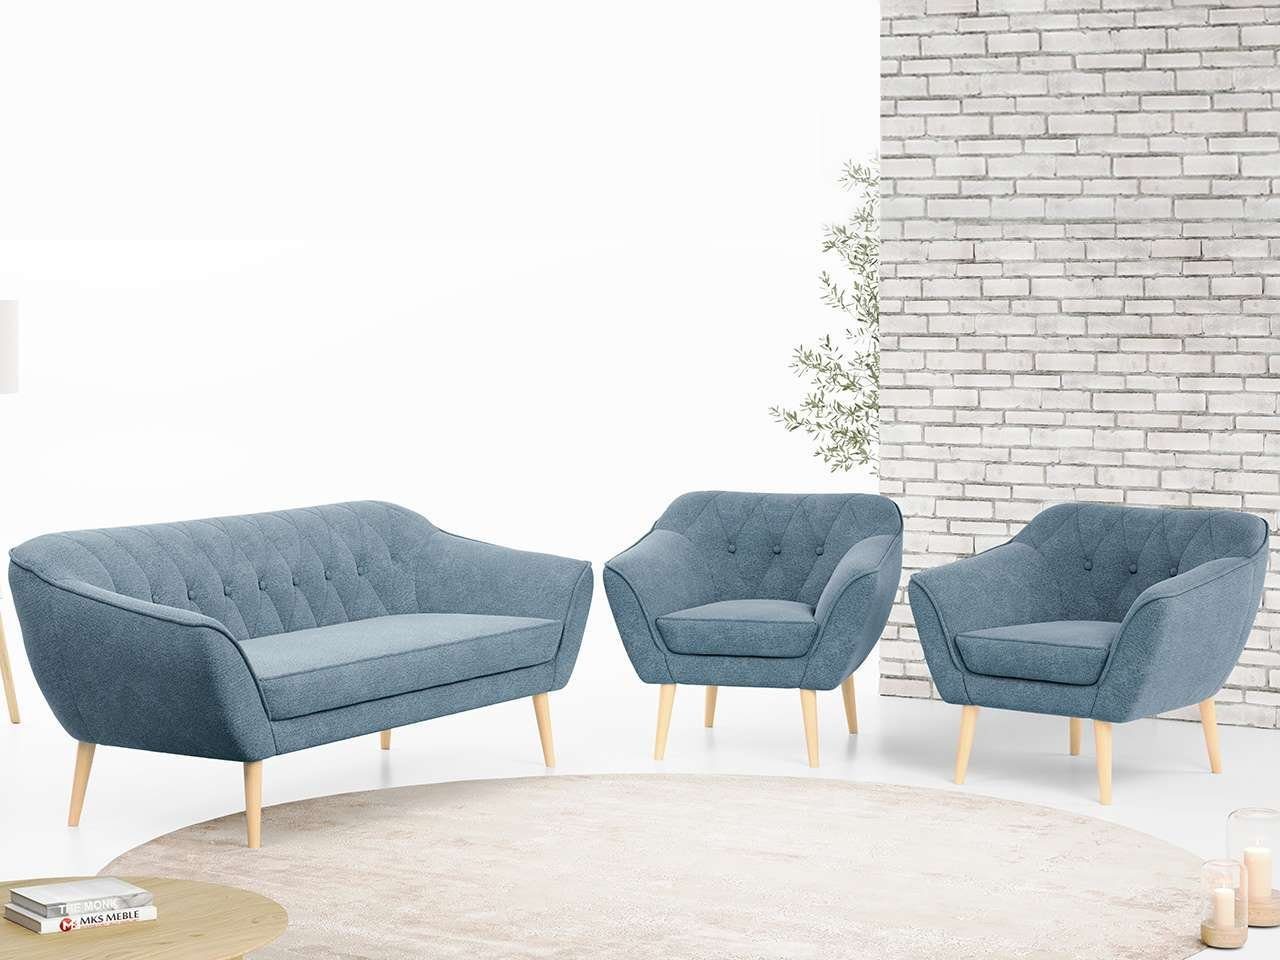 MKS MÖBEL Sofa PIRS 3 1 1, mit Relaxfunktion, Moderne Sofa Set, Skandinavische Deko Blau Matana | Alle Sofas